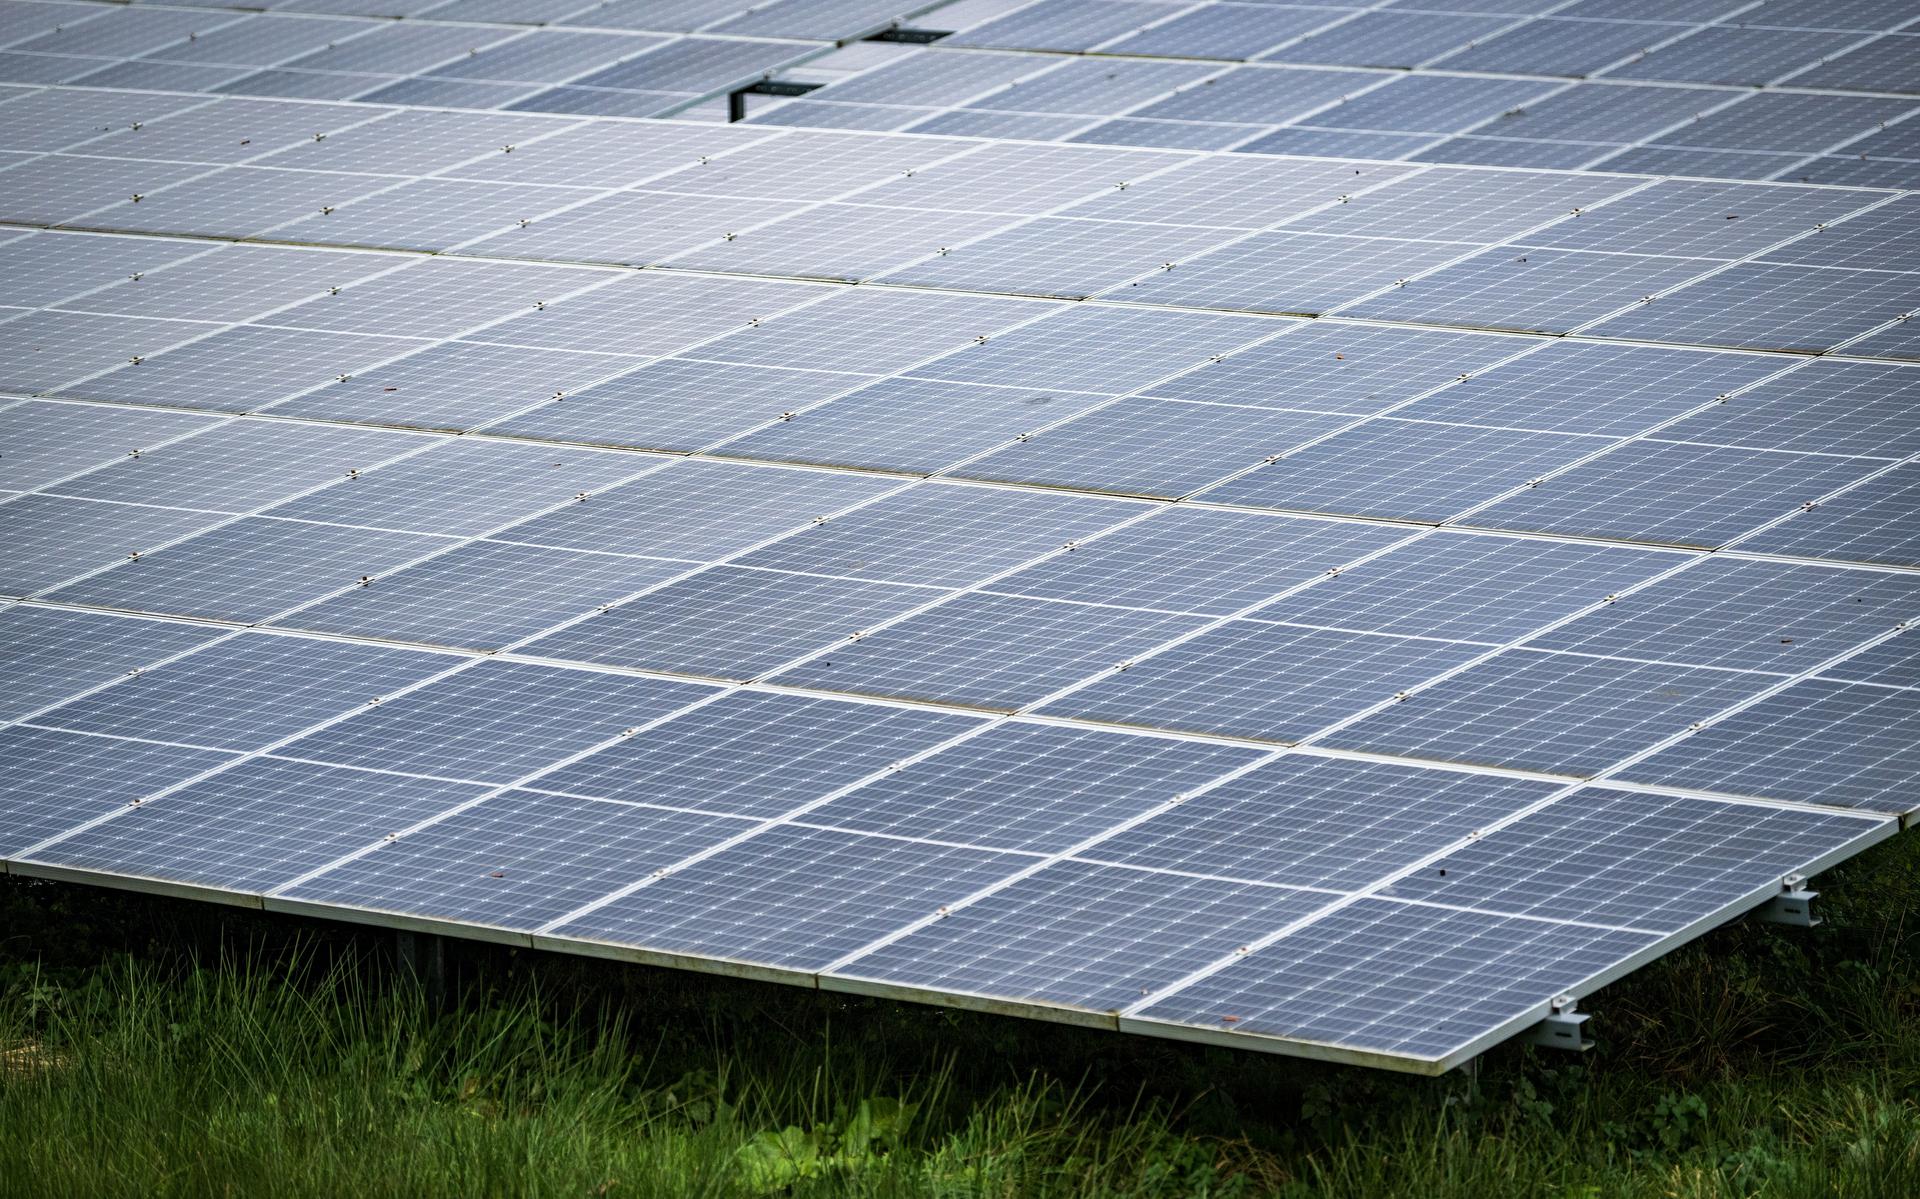 De energie van zonneparken kan door het hoogspanningsstation beter worden afgevoerd.